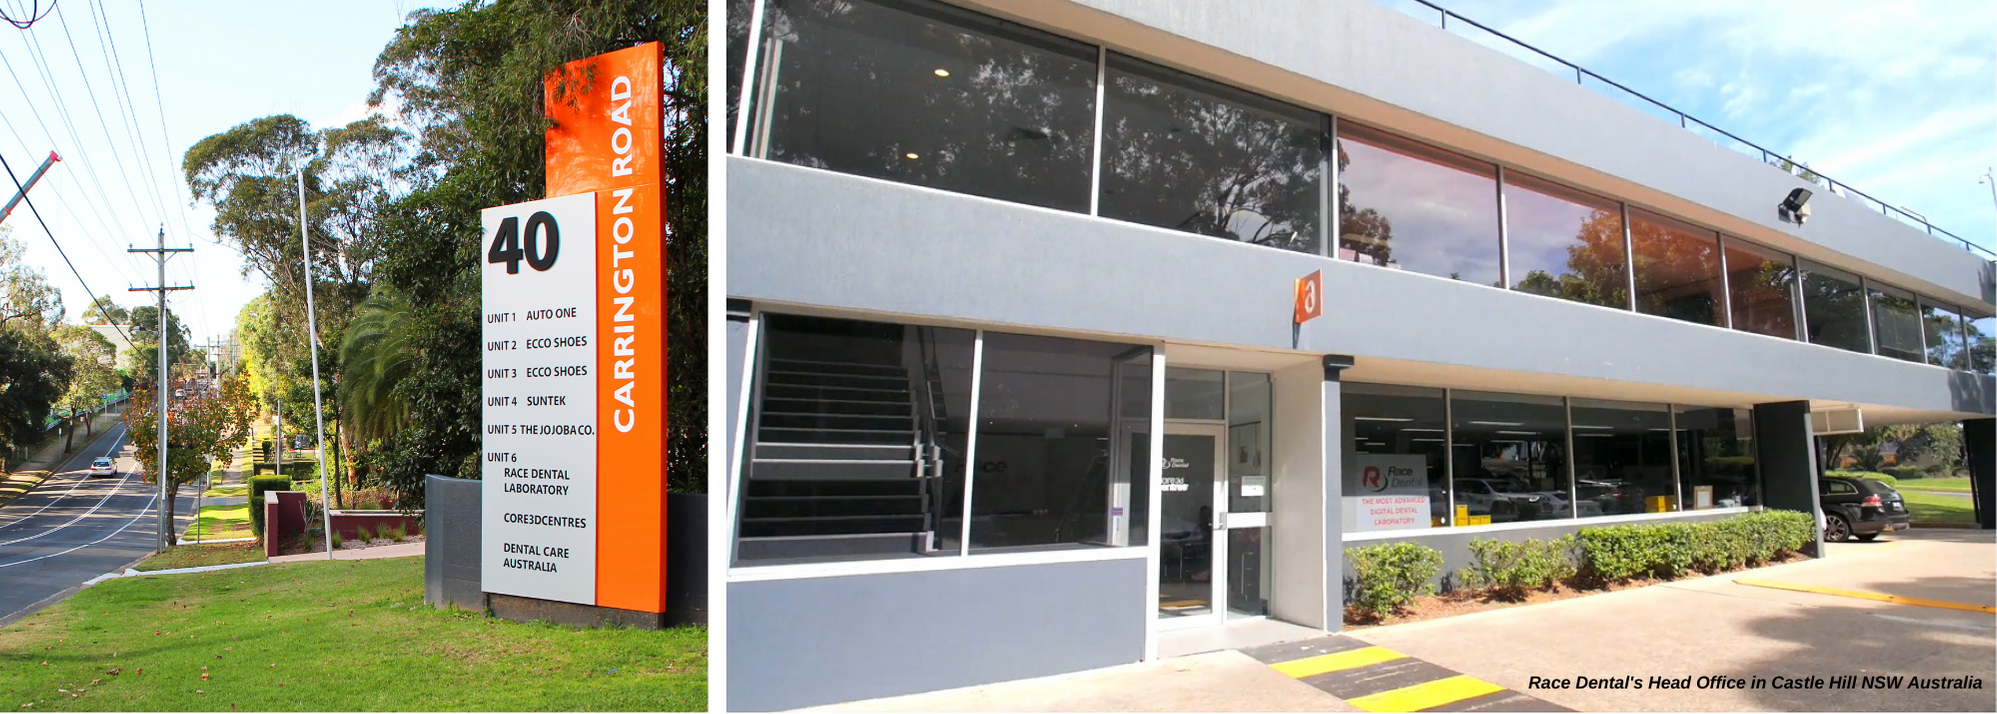 Race Dental's Head Office in Castle Hill NSW Australia